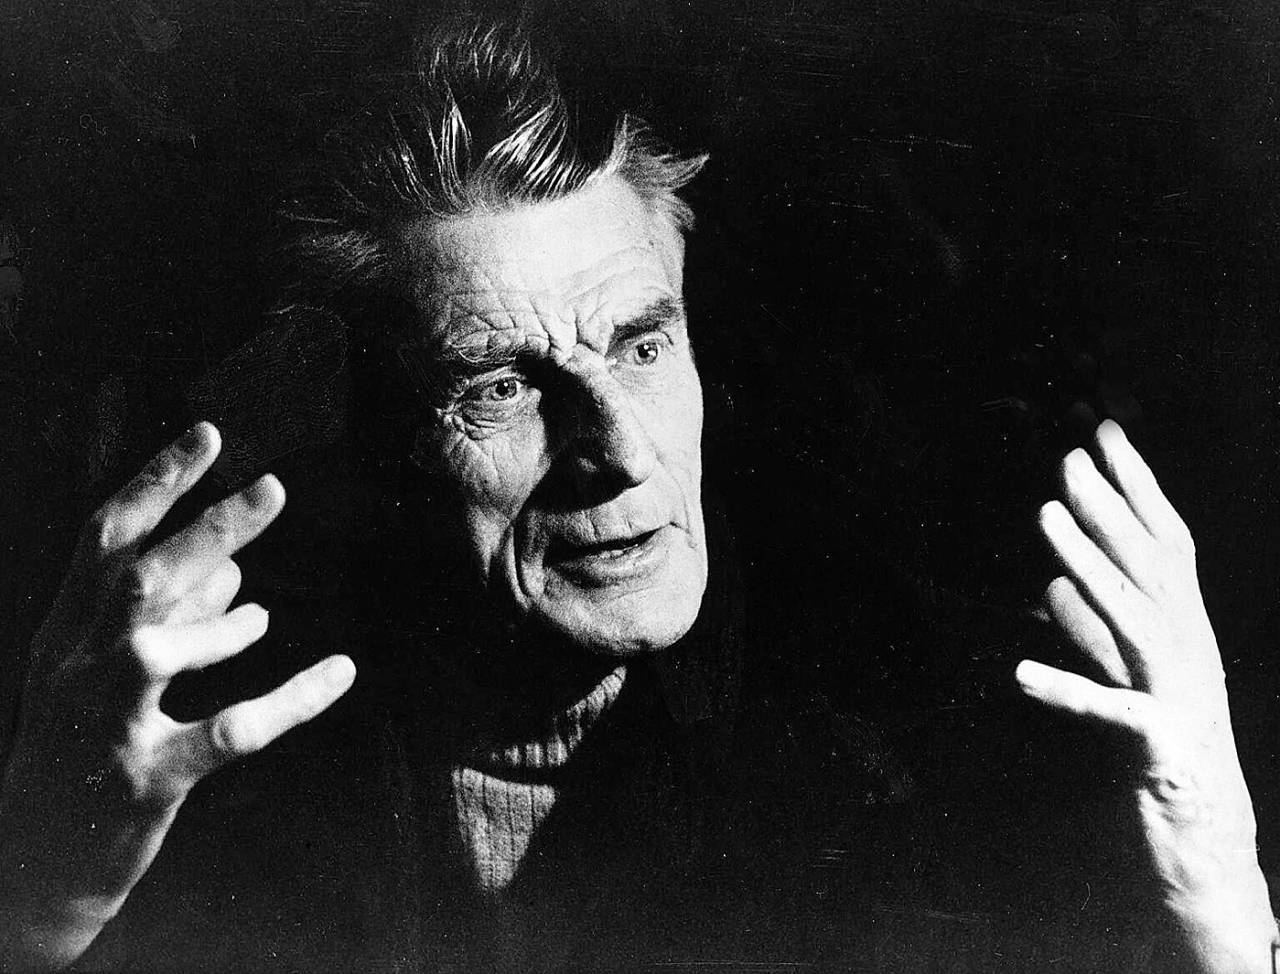 Samuel Beckett: Nobel Laureate, medium-pacer, match-report writer&nbsp;&nbsp;&bull;&nbsp;&nbsp;Getty Images